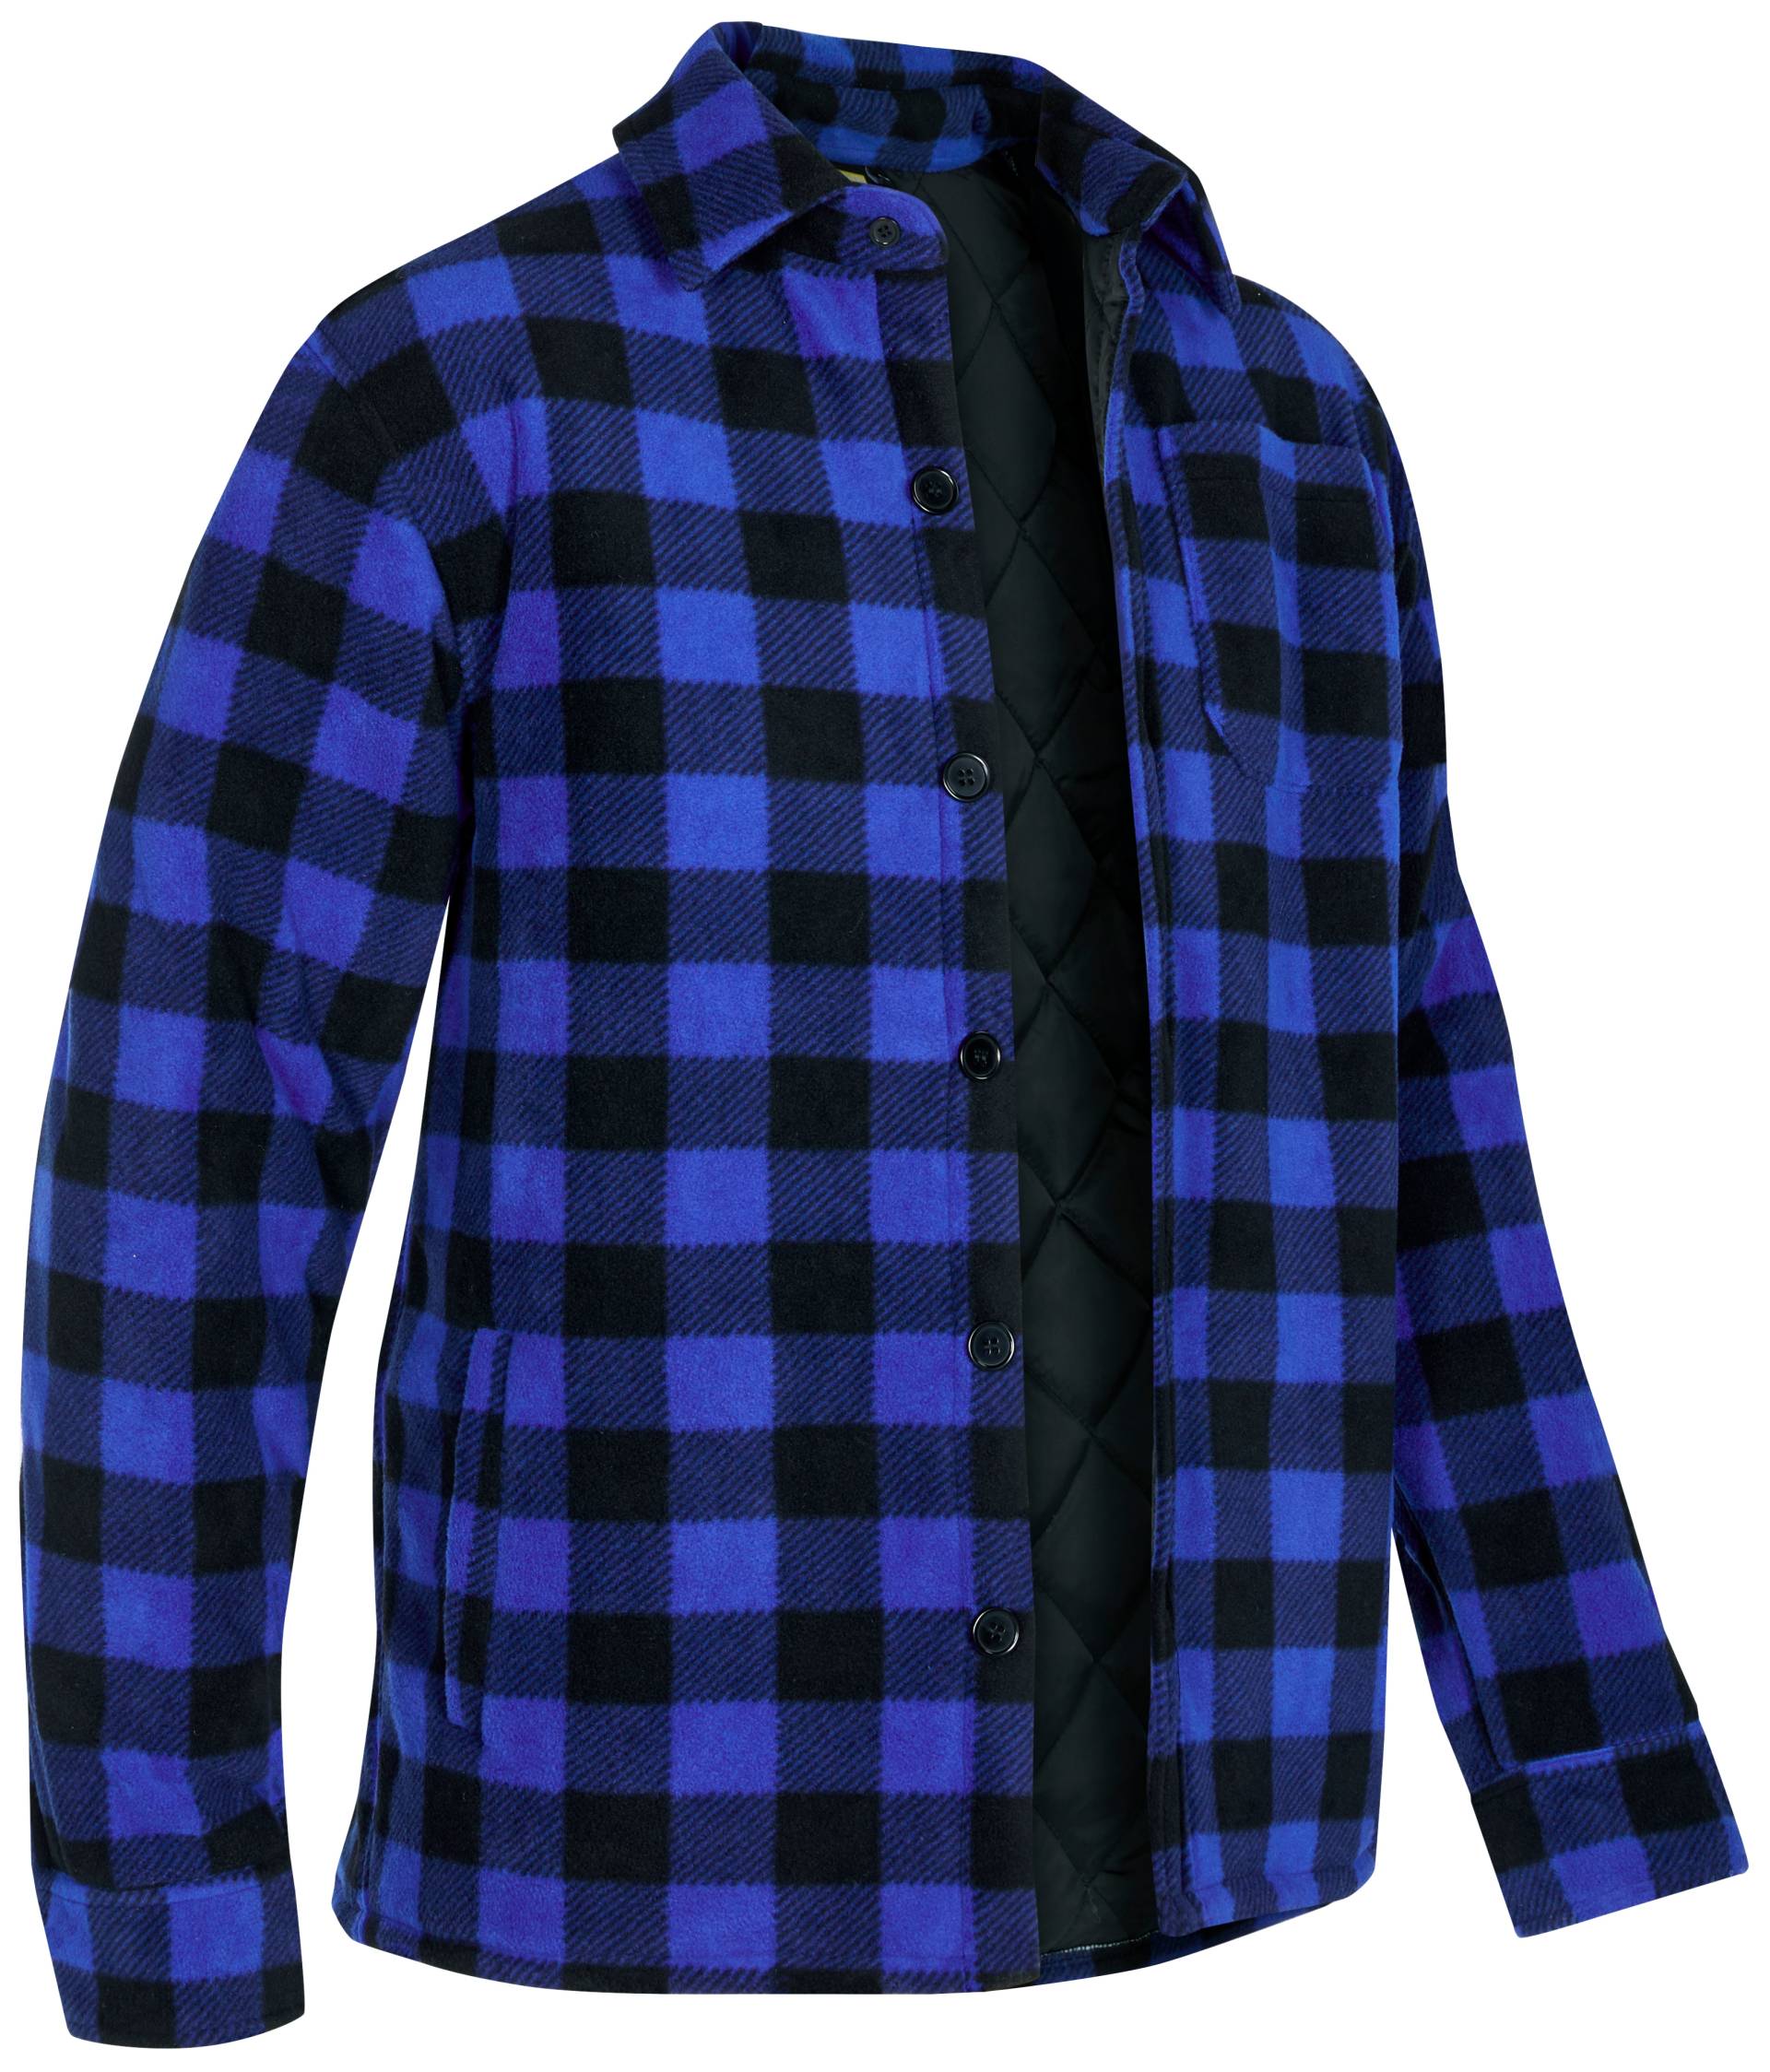 Northern Country Flanellhemd, (als Jacke offen oder Hemd zugeknöpft zu tragen), warm gefüttert, mit 5 Taschen, mit verlängertem Rücken, Flanellstoff von Northern Country